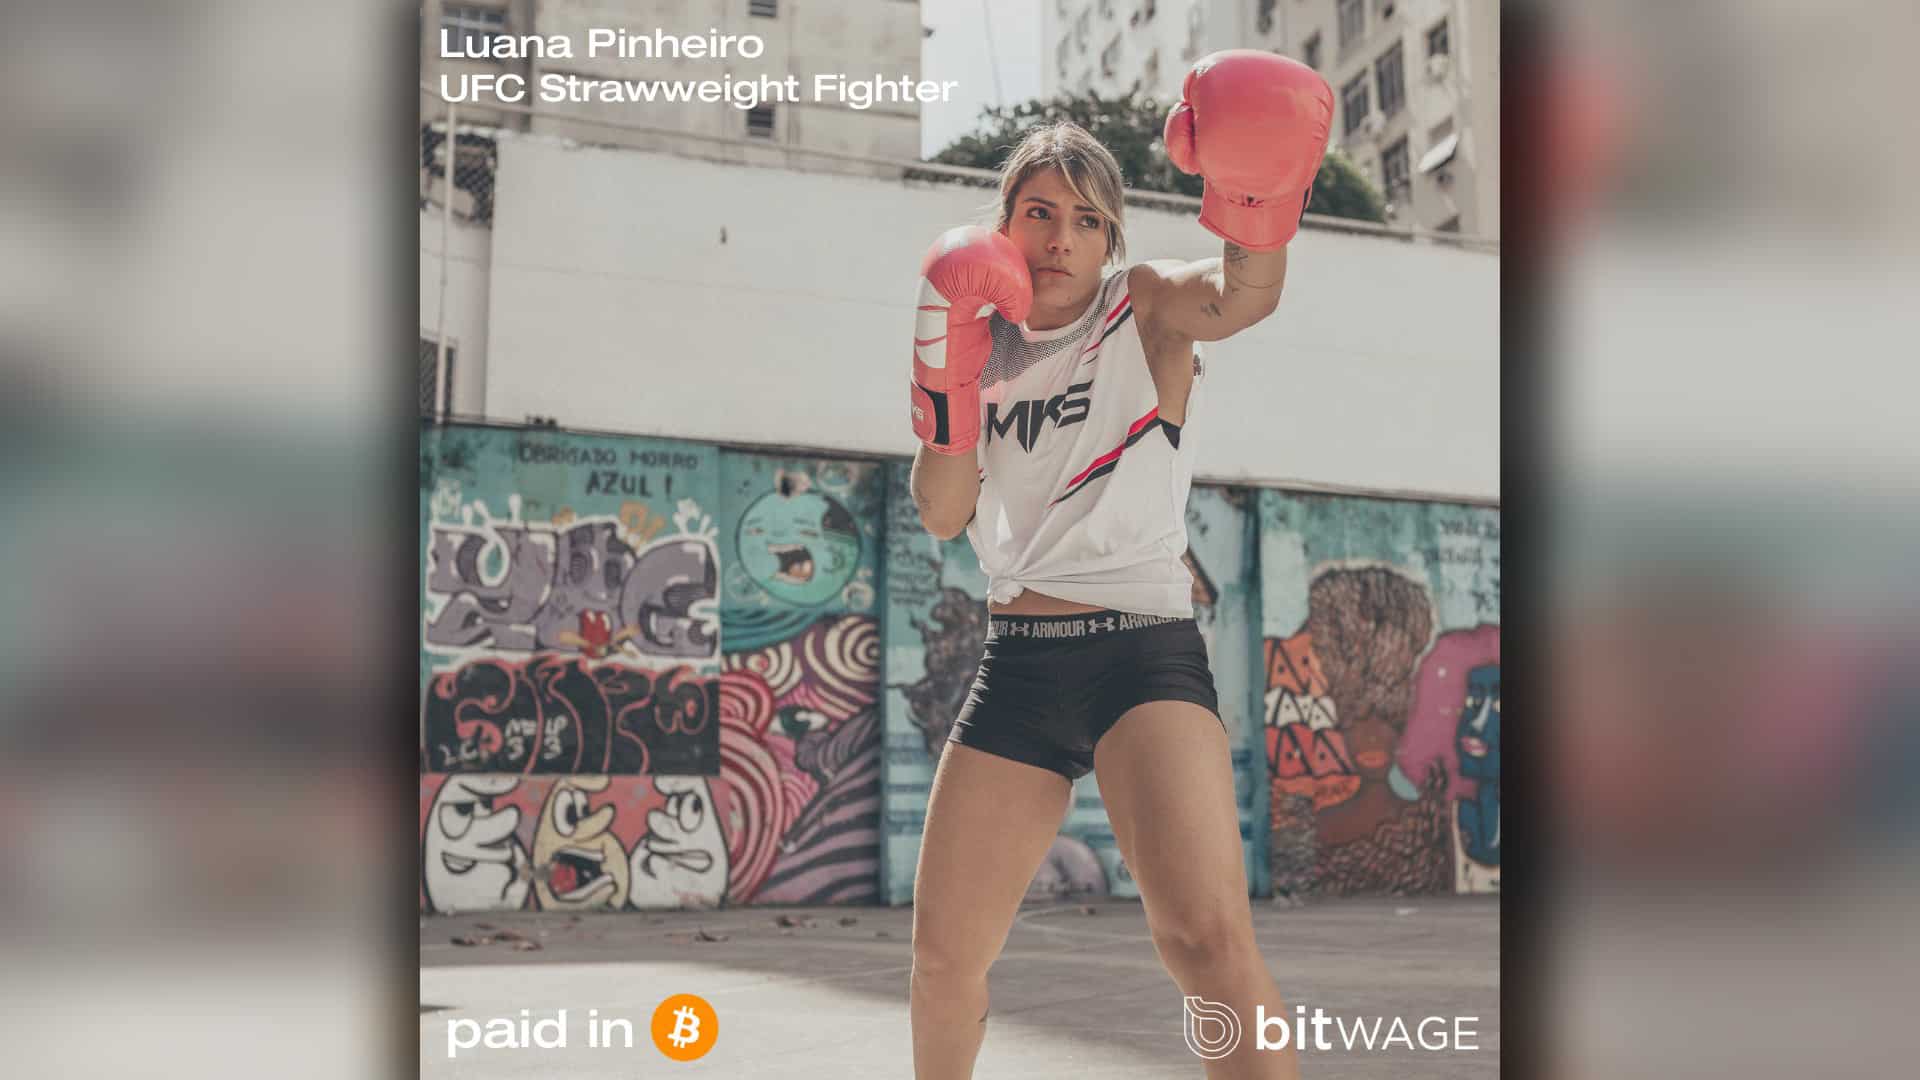 Lutadora de UFC, Luana Pinheiro vai receber salário em Bitcoin